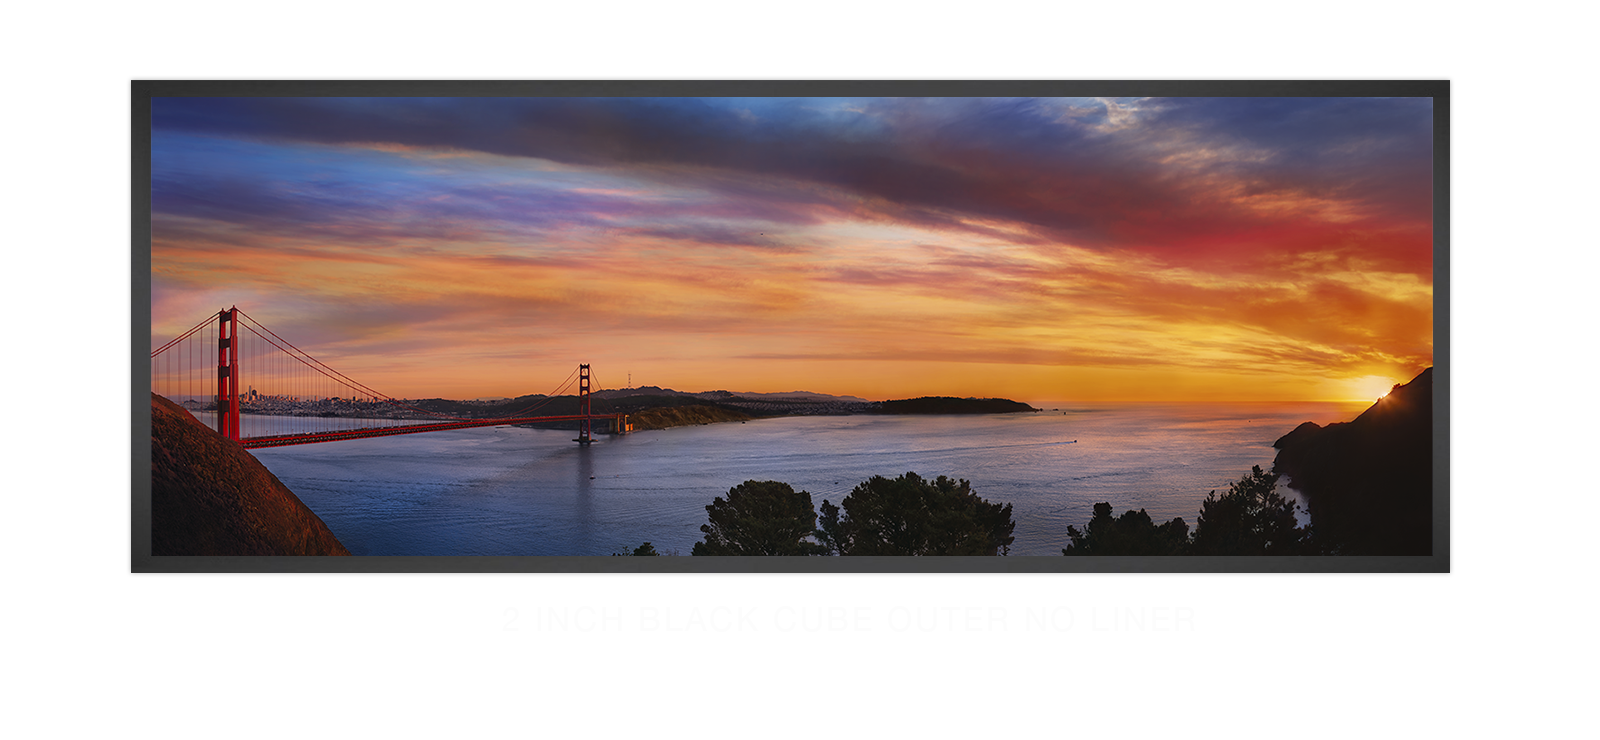 10GoldenGateBridge 2 Inch Black Cube Outer w_No Liner T